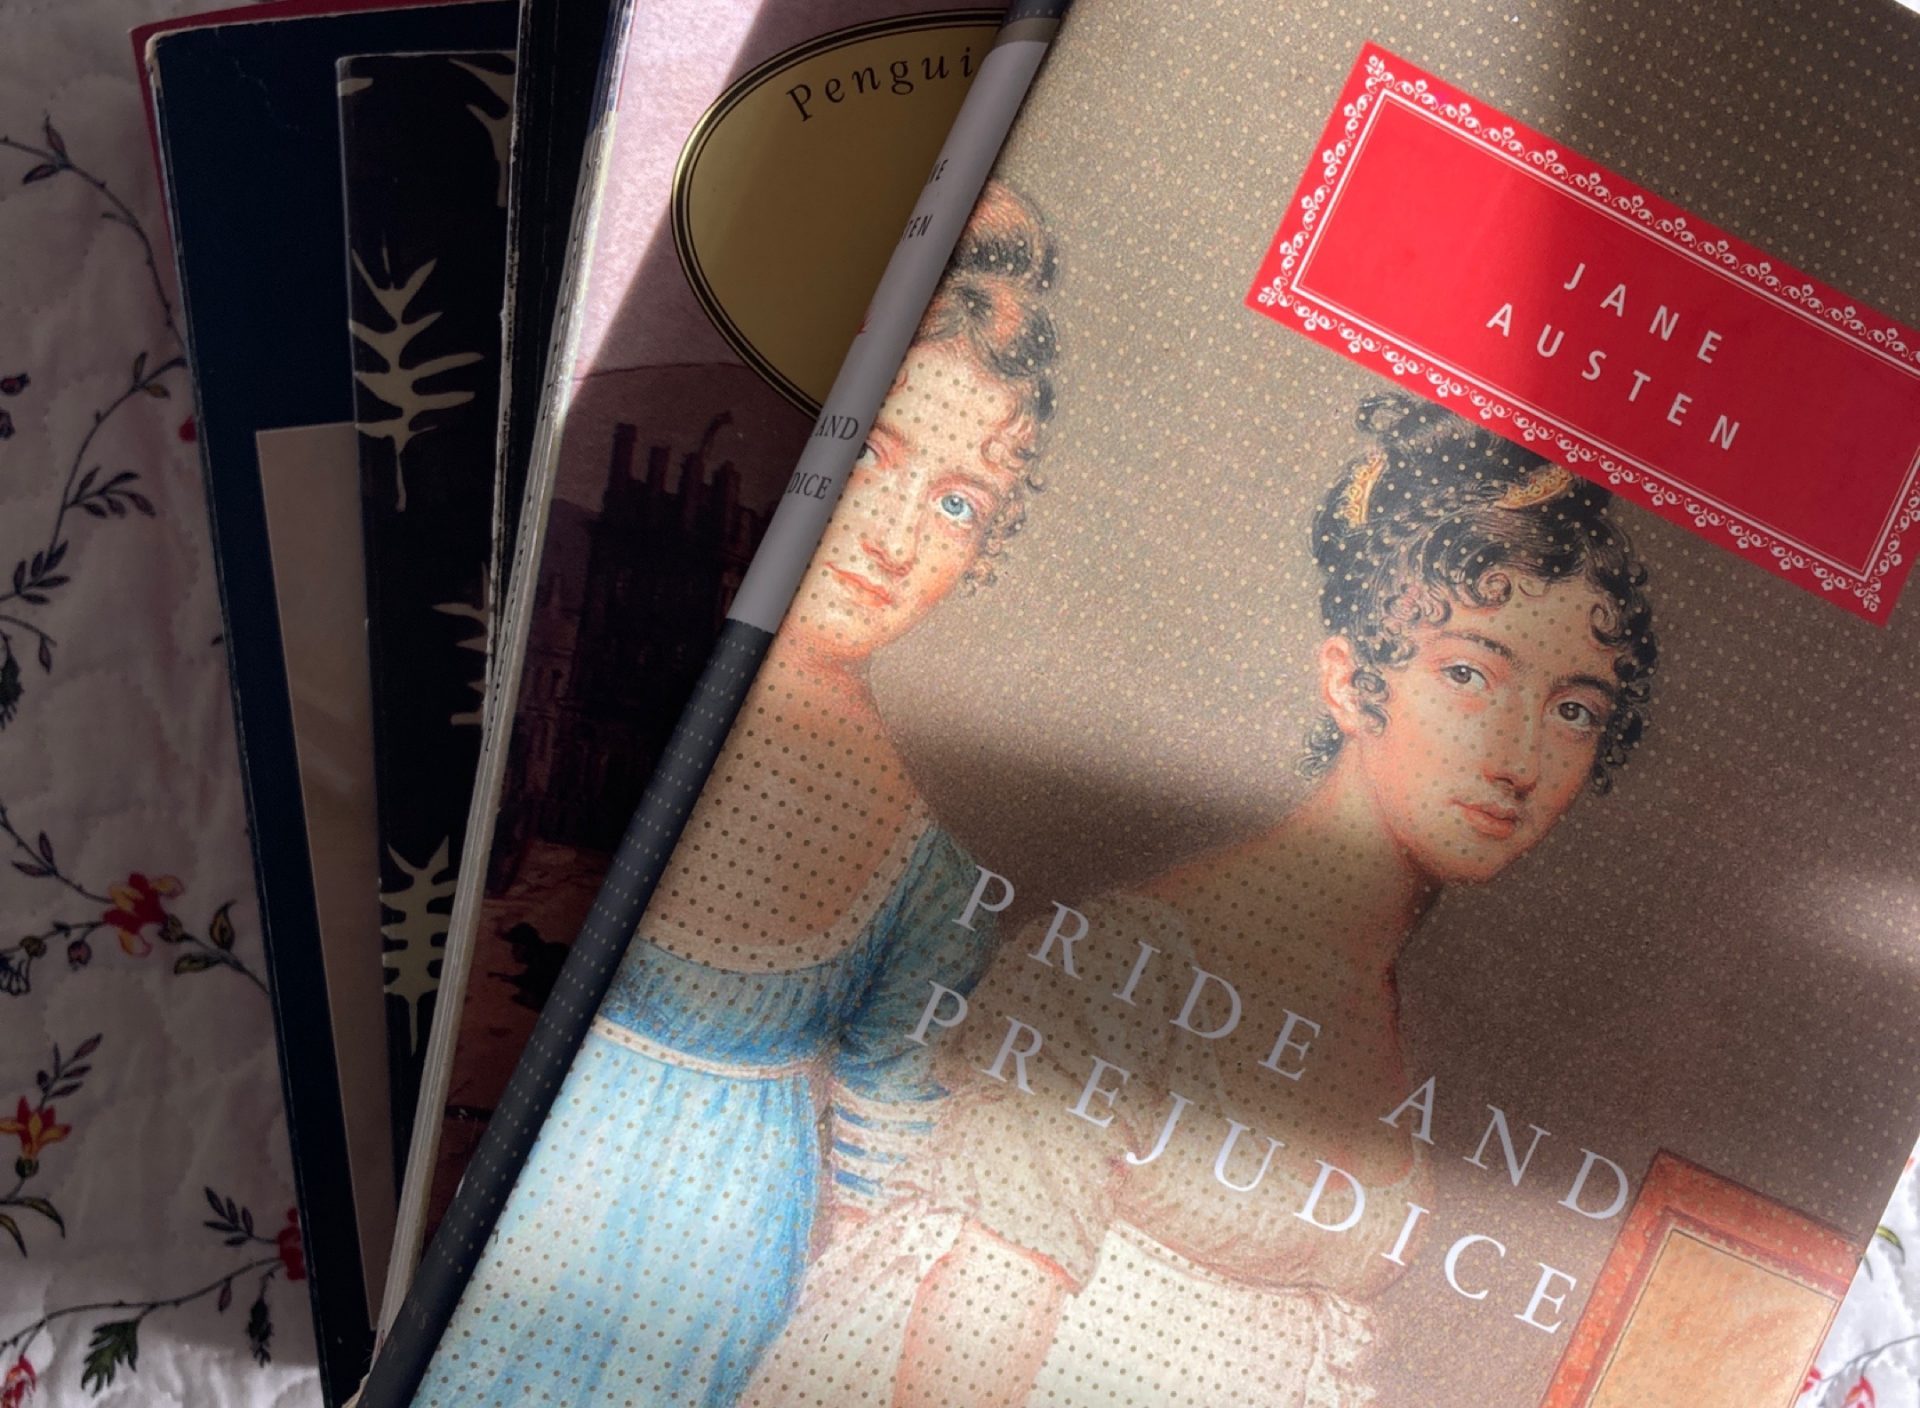 Warum gilt Jane Austen immer noch als eine der beliebtesten Autorinnen? Wir sprechen über "Stolz und Vorurteil"/ "Pride and Prejudice"